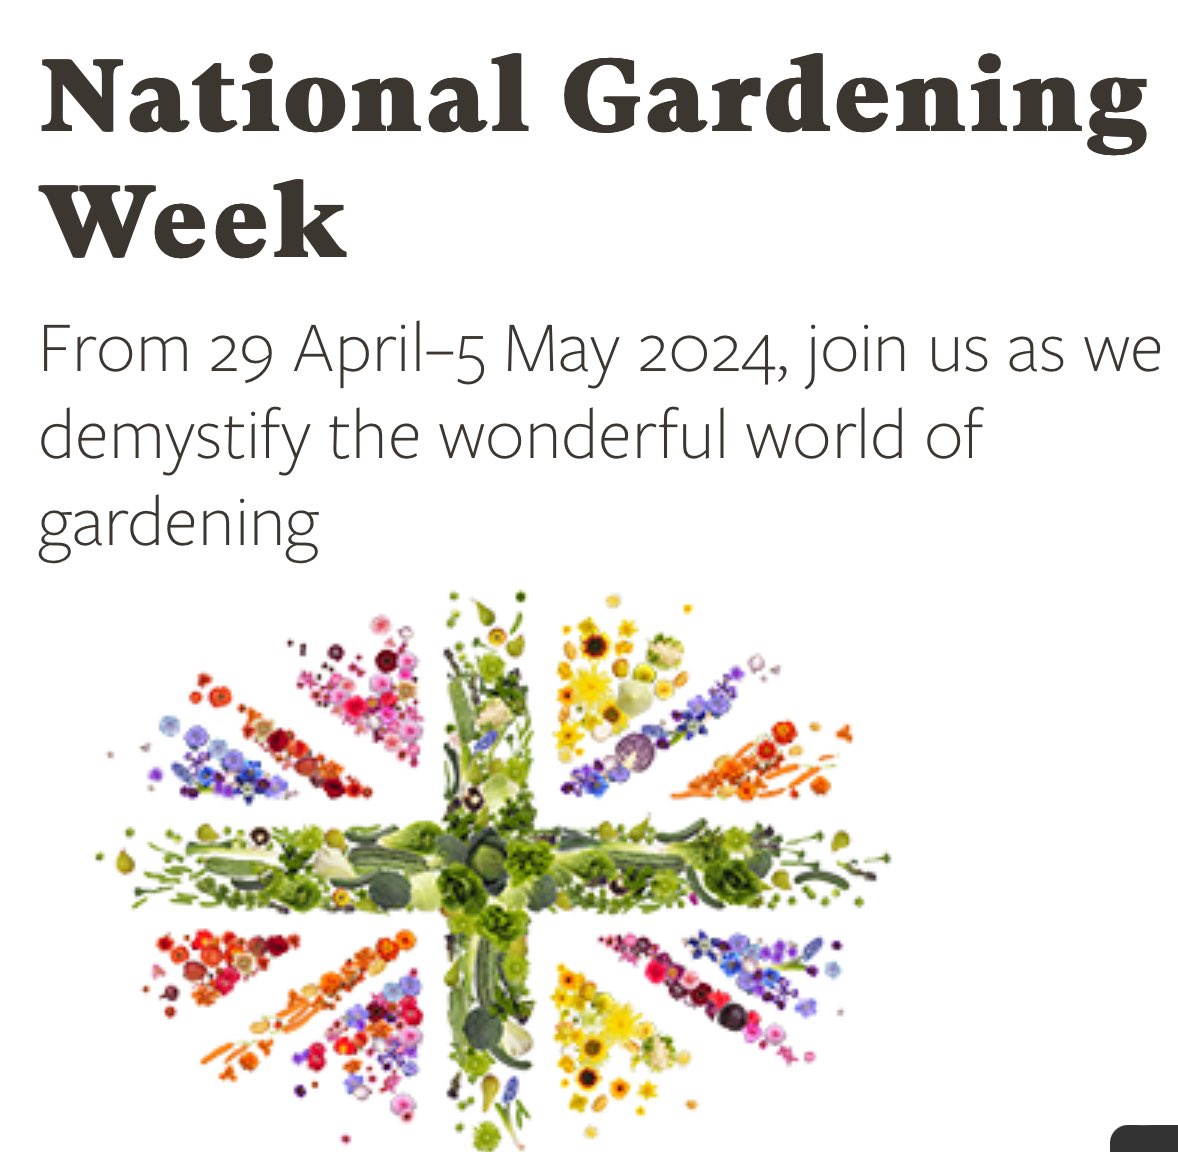 National Gardening Week! 🌻🌻 today 29 April - 5 May 2024 Theme for National Gardening Week in 2024 - “Knowledge is Flower” 🌻🌻 Happy summer ahead! 🚶🏽‍♀️ 🚴🏼‍♀️ walk bike ….. @RHSBloom @LondonInBloomUK @KentinBloom @TWellsTourism